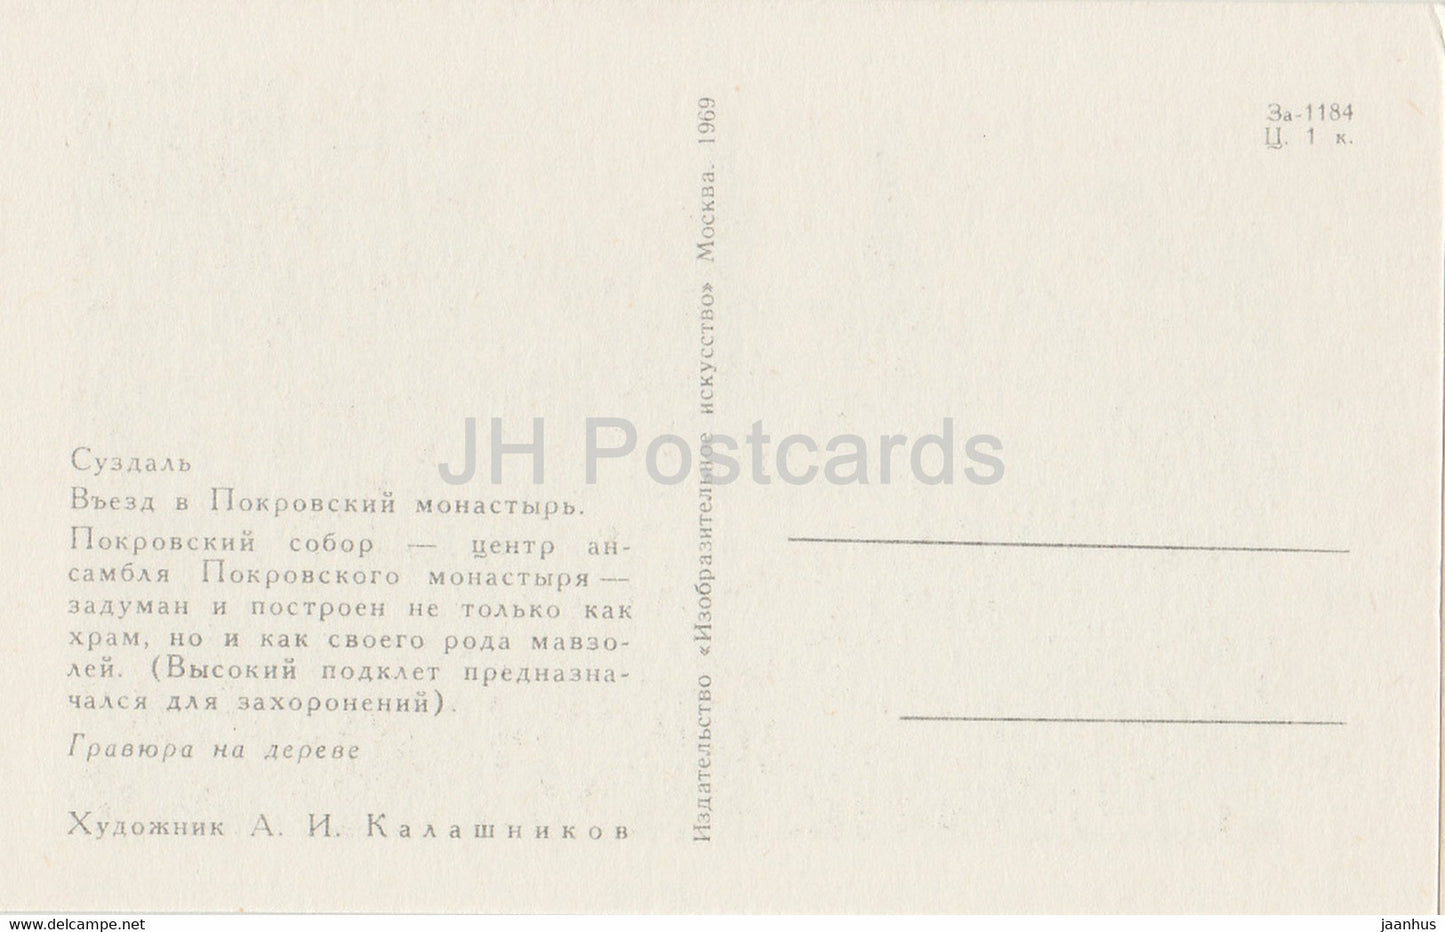 Susdal – Eingang zum Fürbittekloster – Illustration von A. Kalashnikov – 1969 – Russland UdSSR – unbenutzt